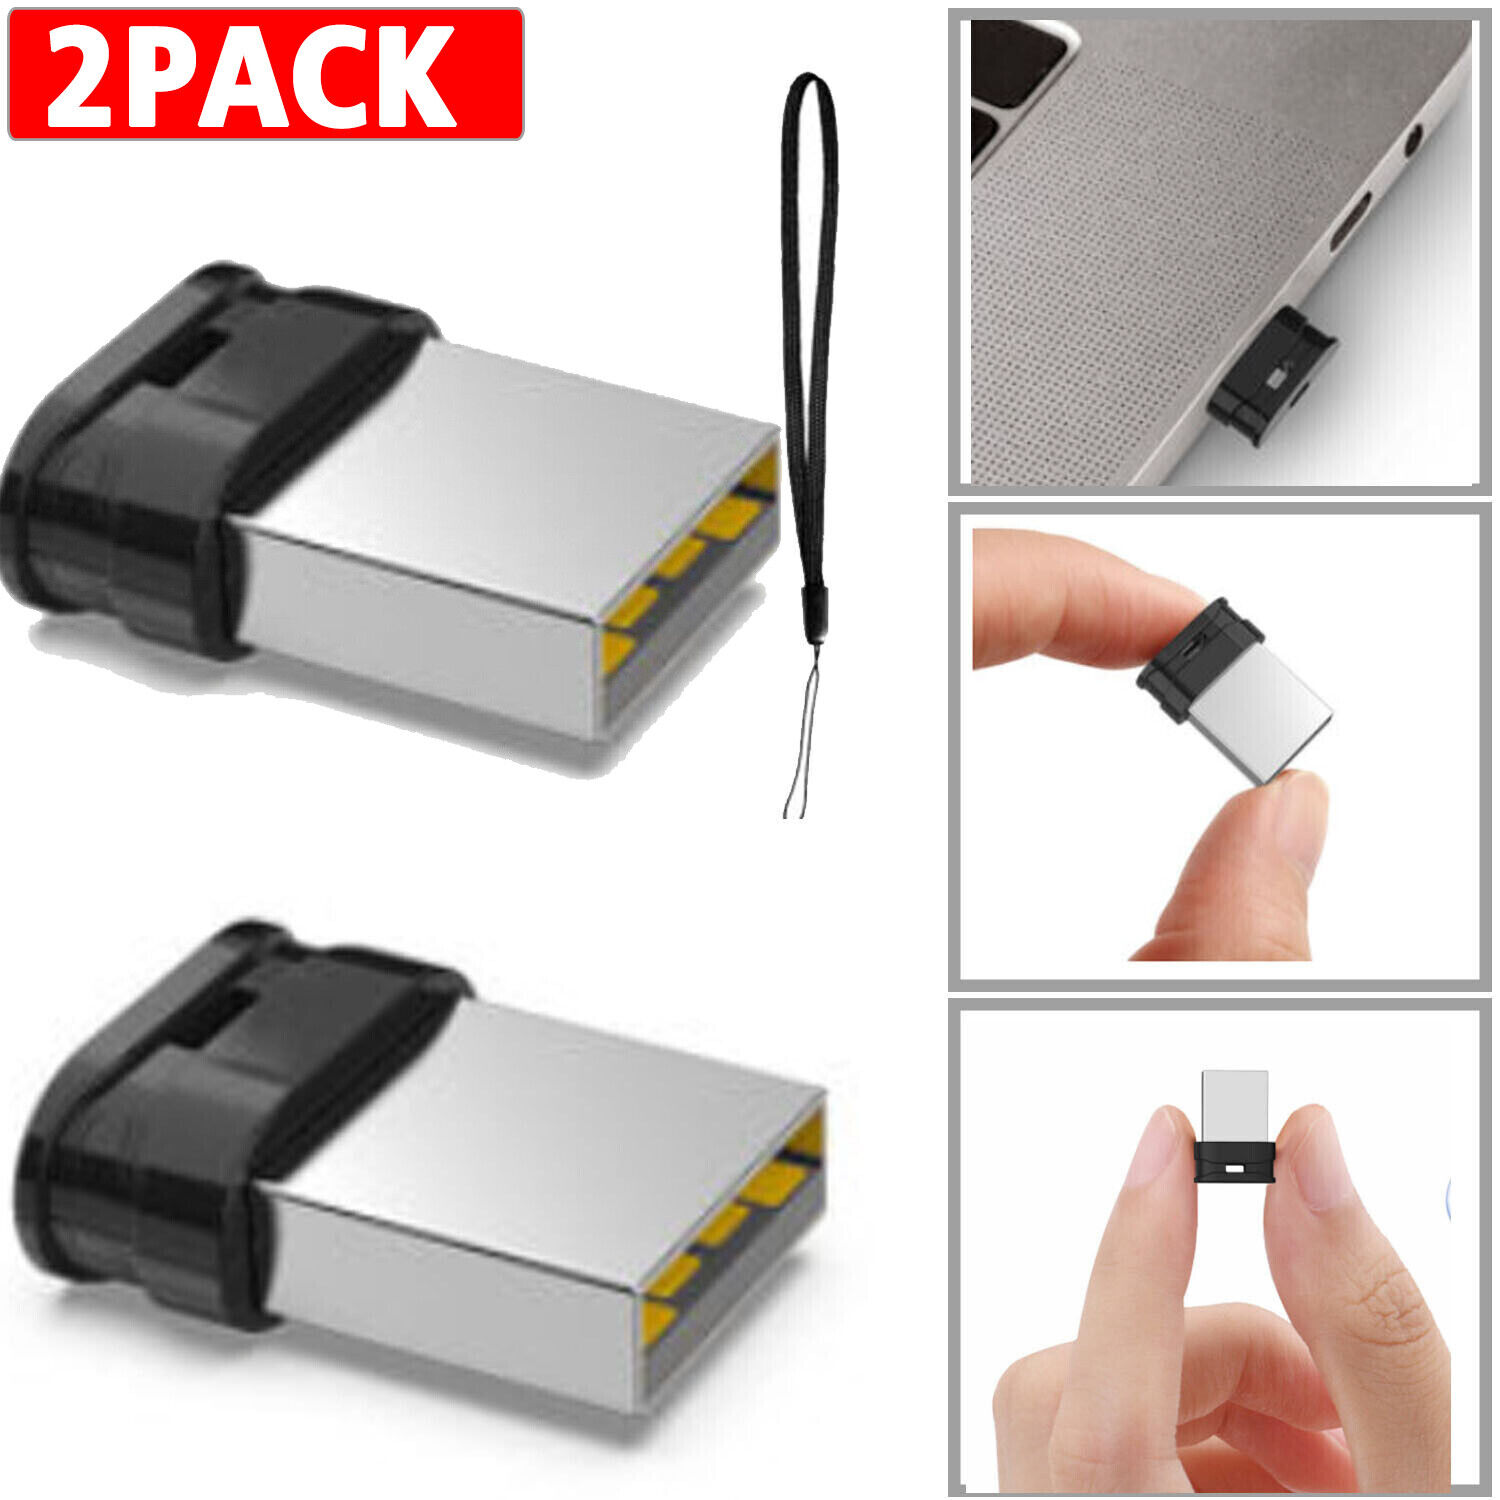 2PAck Small Mini USB 2.0 32GB 64GB USB Flash Pen Drive U Disk Memory Disks Drive